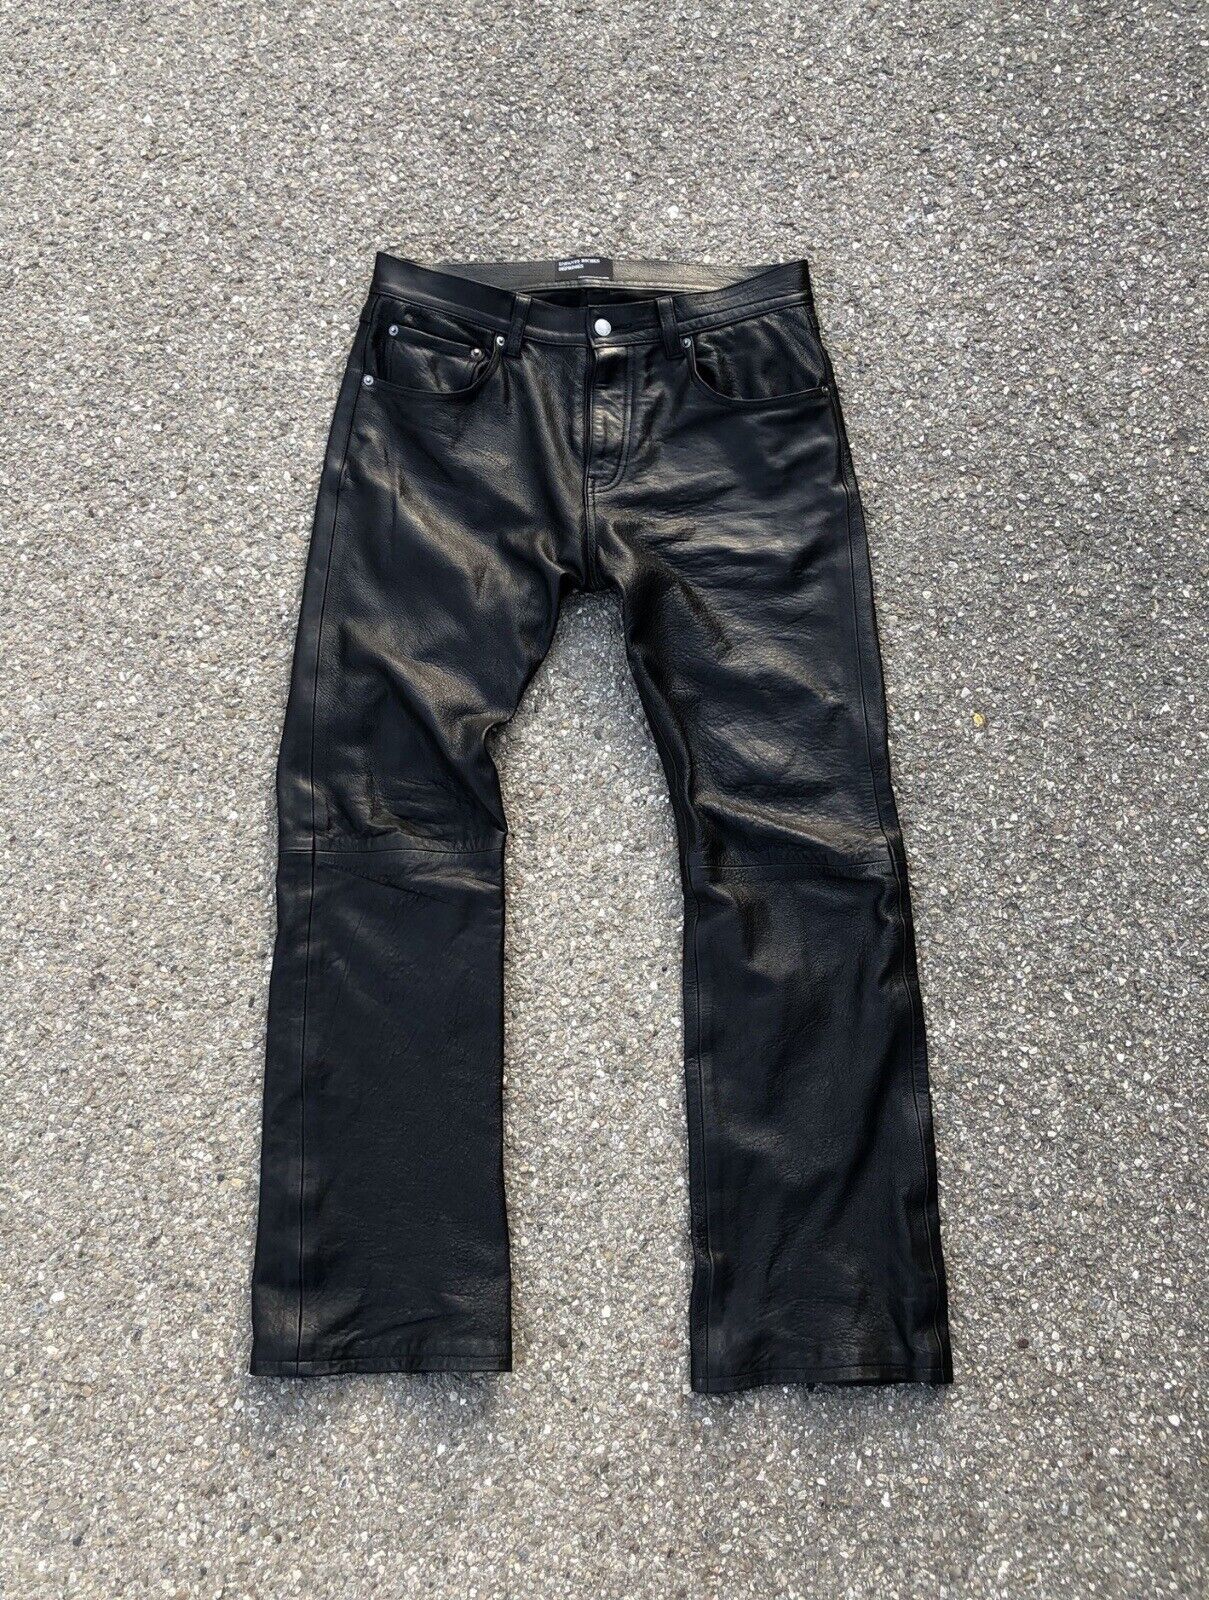 Enfants Riches Déprimés Leather Flare Pants - Size 32